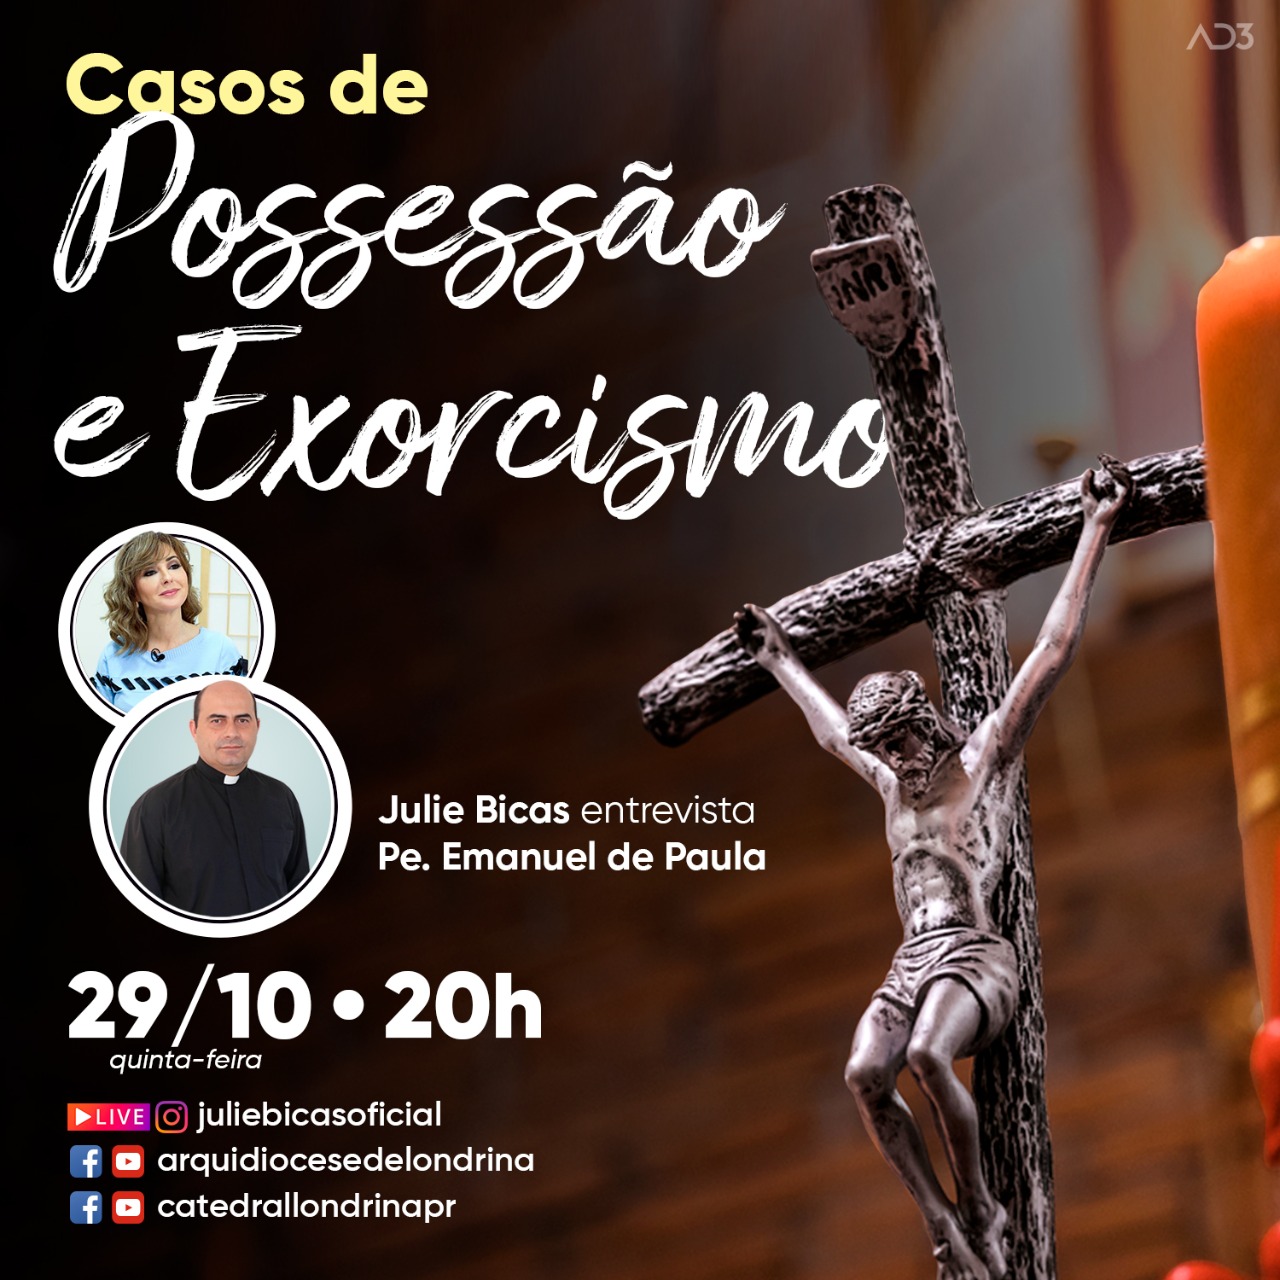 LIVE: CASOS DE POSSESSÃO E EXORCISMO